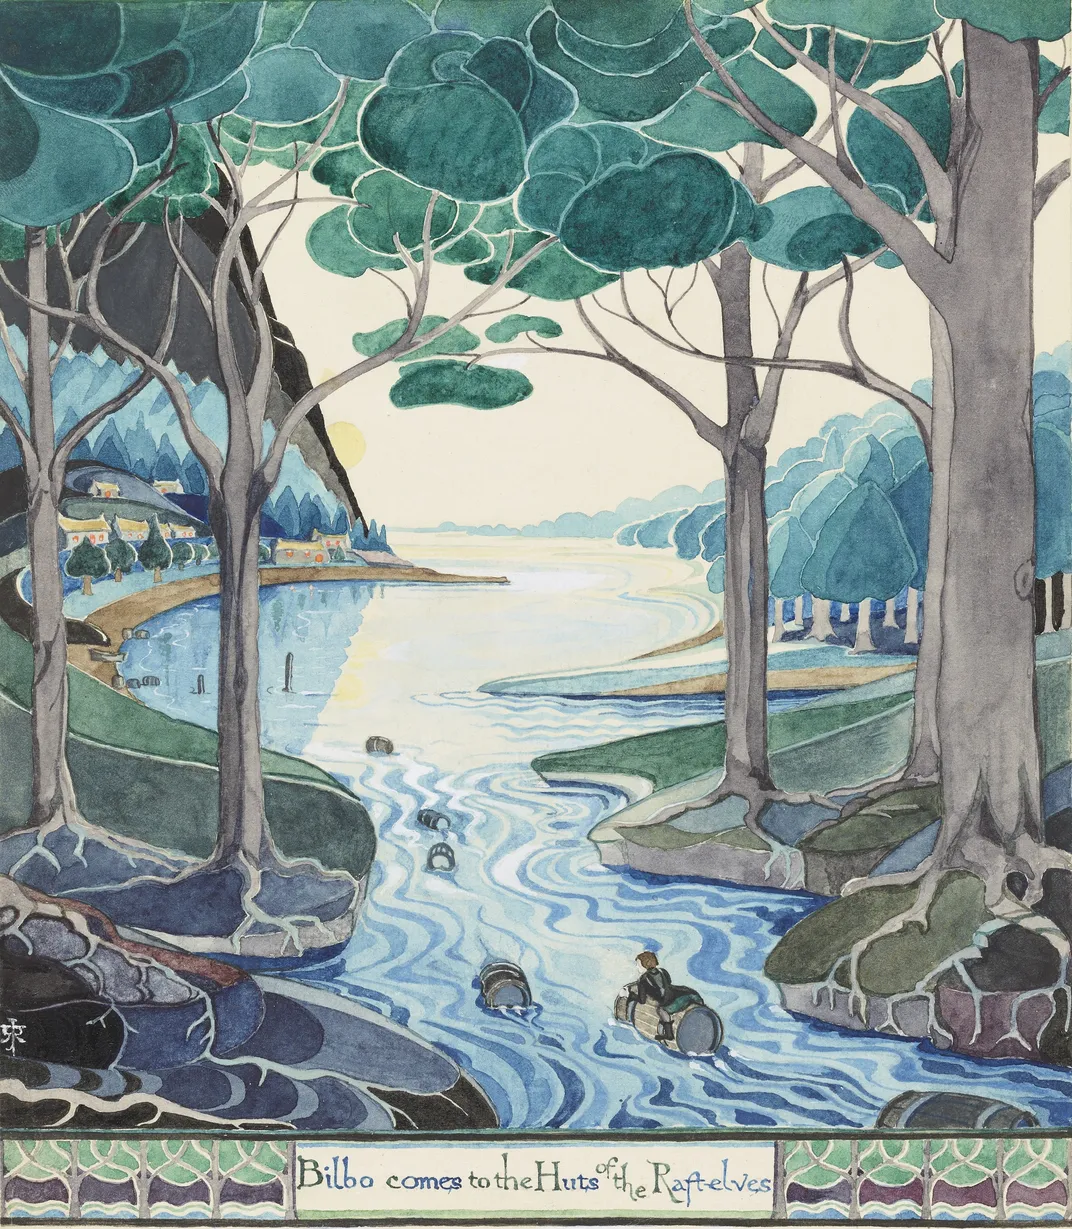 صحنه آبی-سبز آبی از یک هابیت کوچک که به شاخه درخت چسبیده و در رودخانه ای زیبا شناور است.